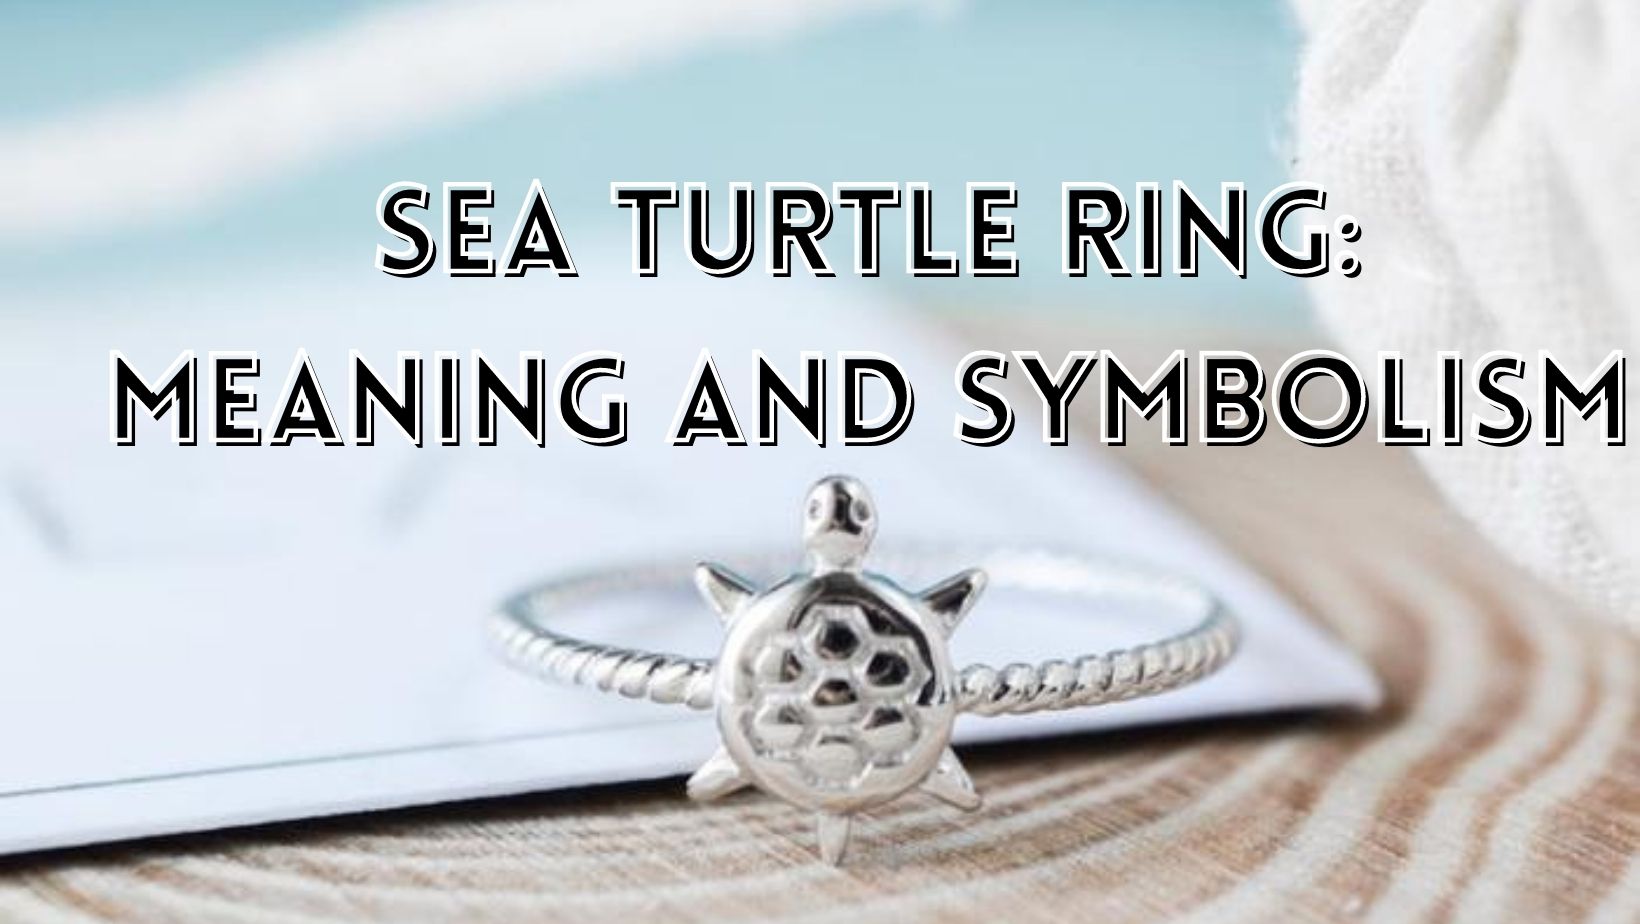 Sea turtle ring symbolism 